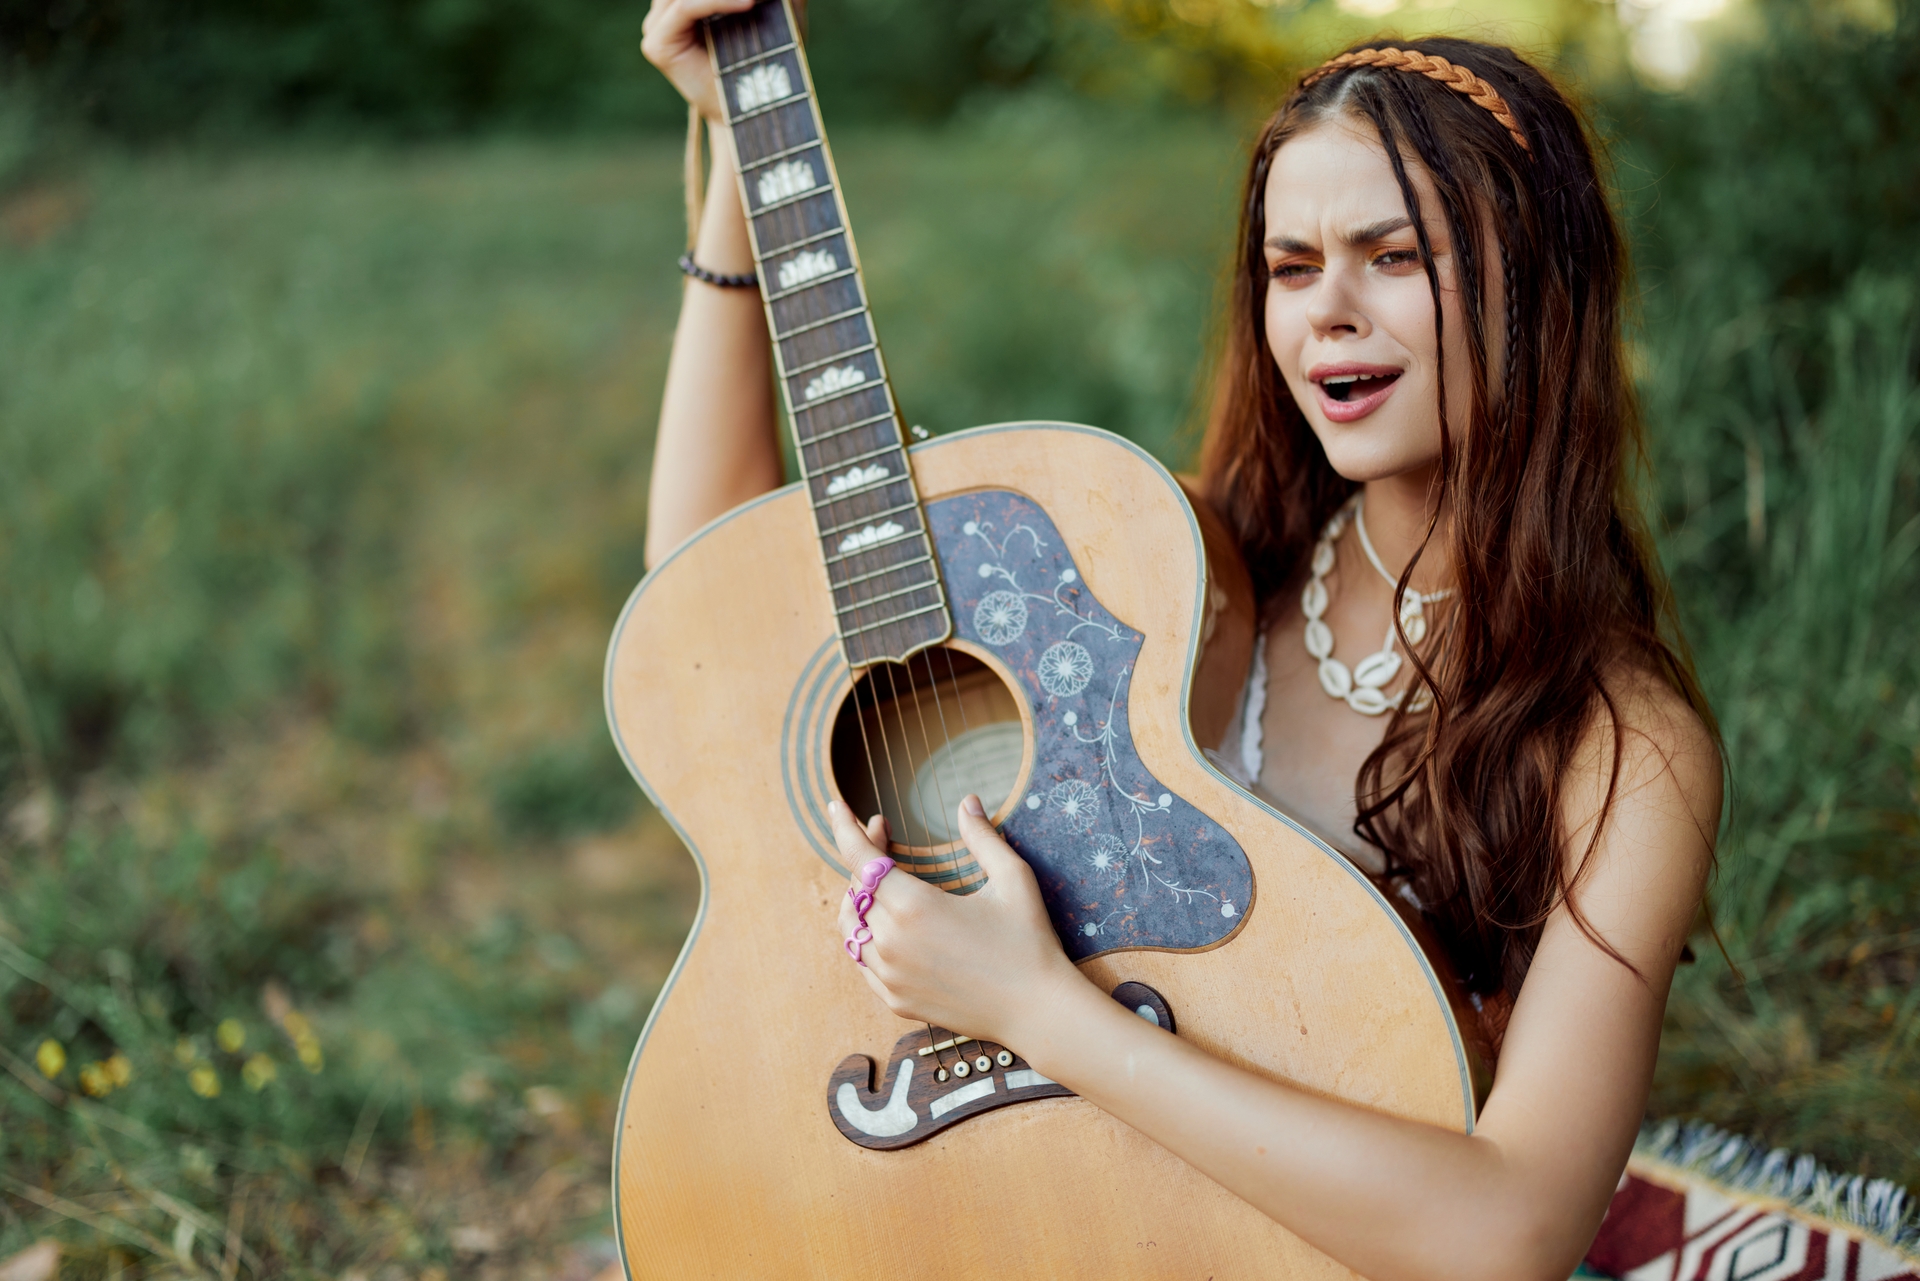 Kobieta gra na gitarze i ubrana jest w stylu hippie